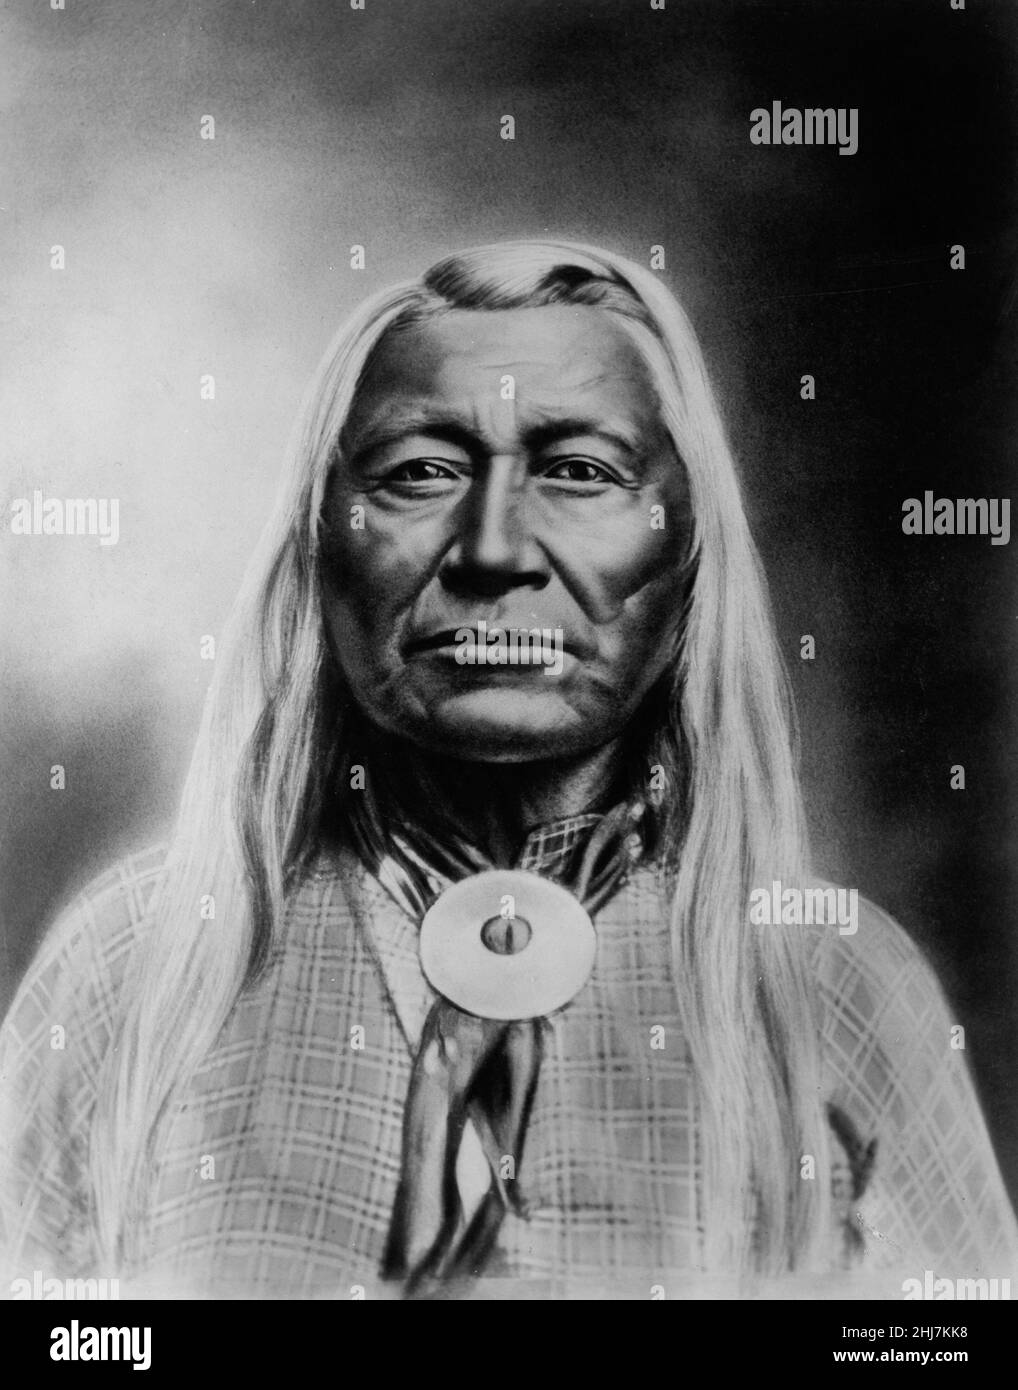 Washakie, chef du portrait de Shoshones. Photo antique et vintage - amérindien / indien / américain indien. Rose & Hopkins, photographe c 1900. Banque D'Images